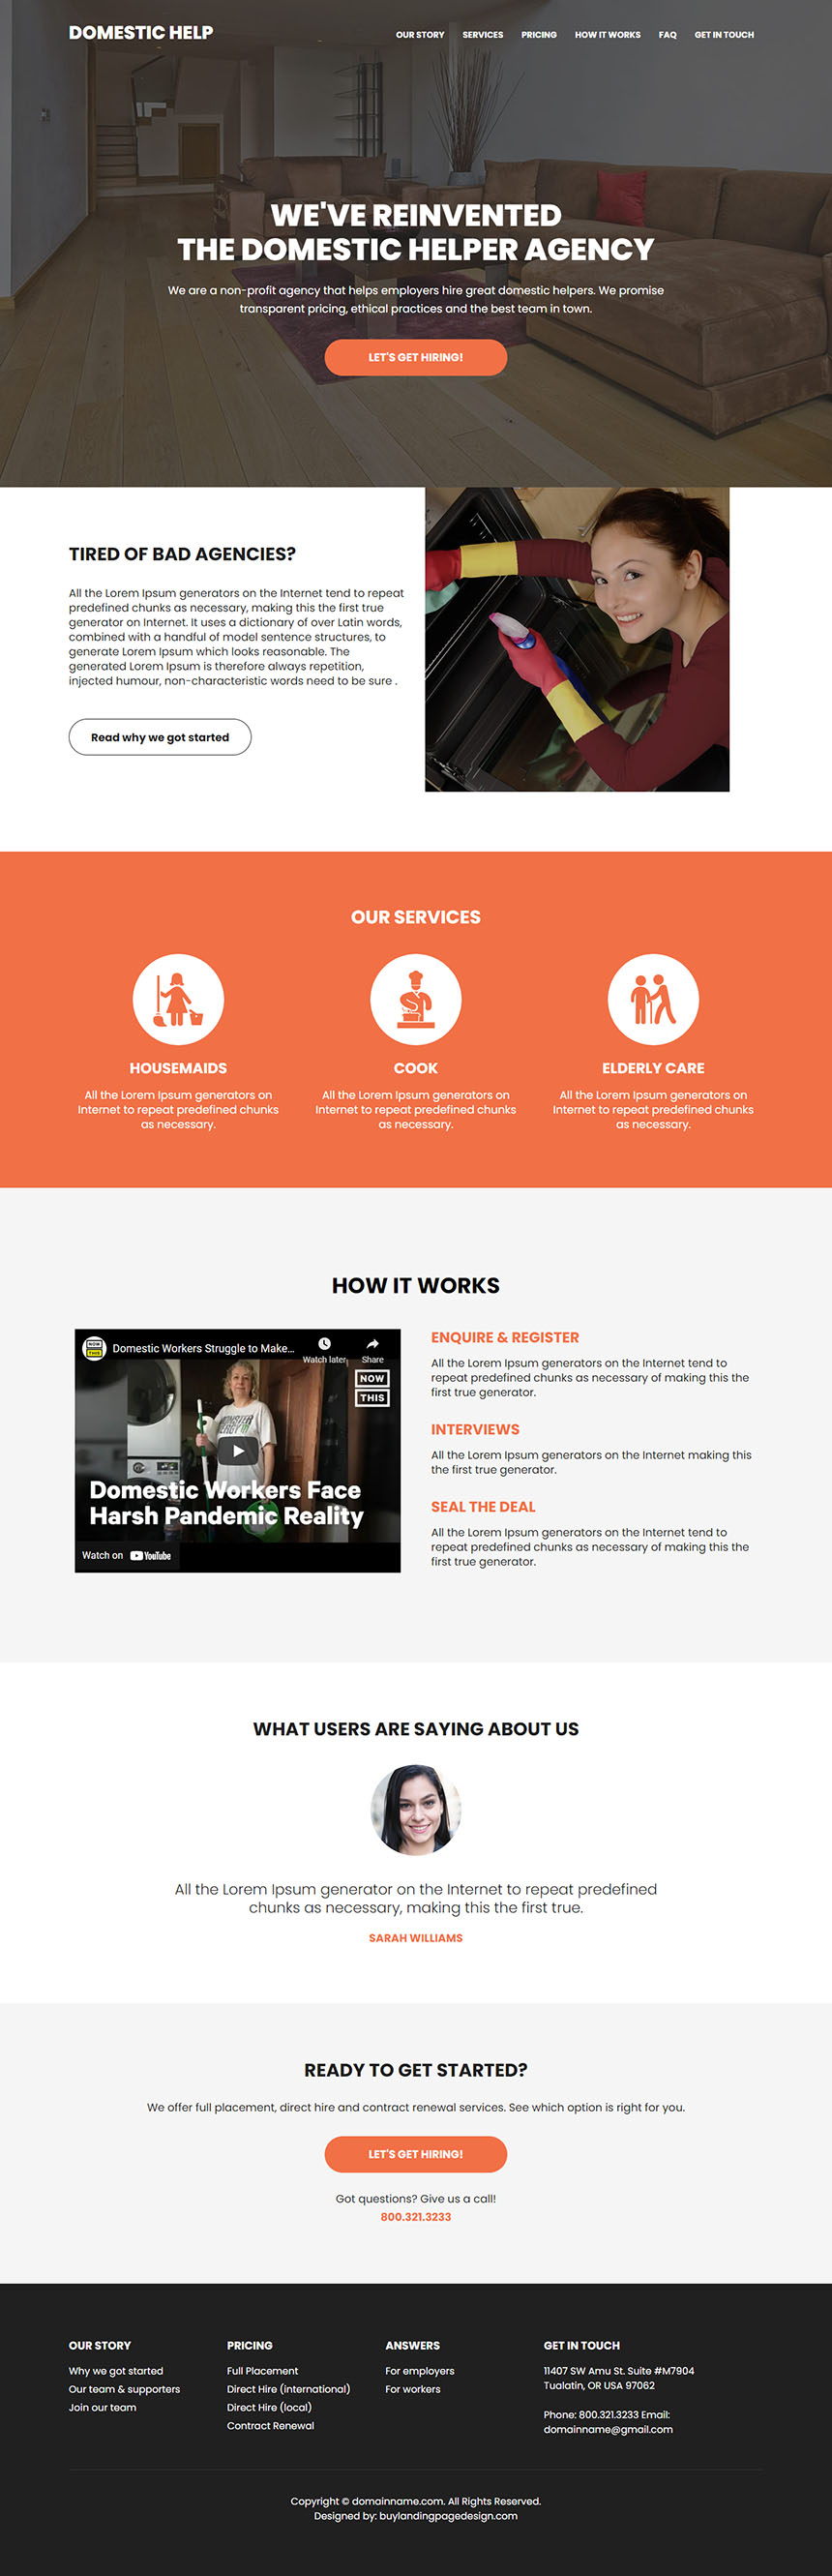 domestic helper agency responsive website design